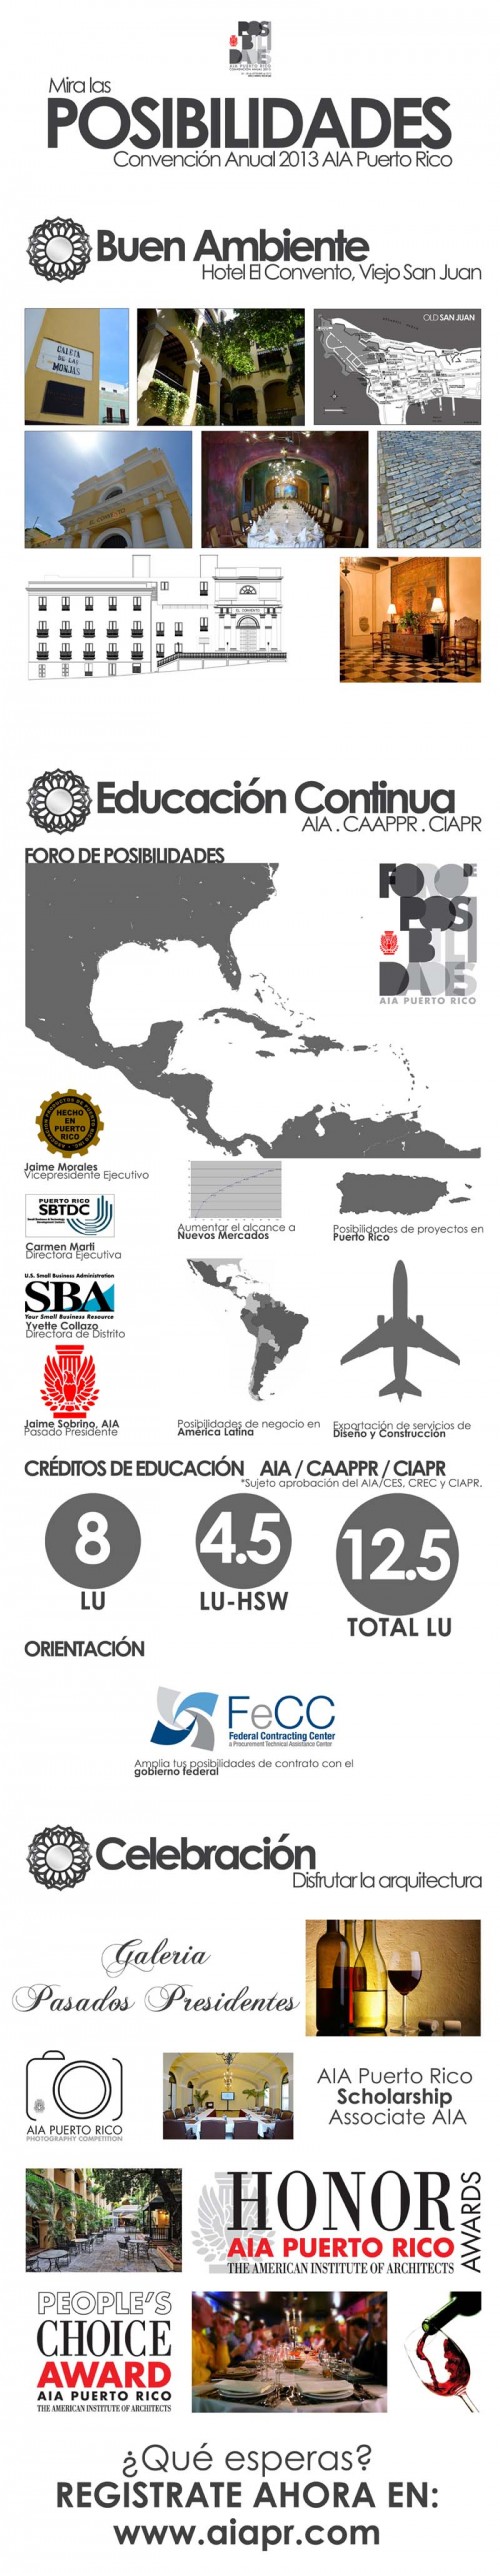 arquillano POSIBILIDADES: Convención Anual 2013 AIA Puerto Rico